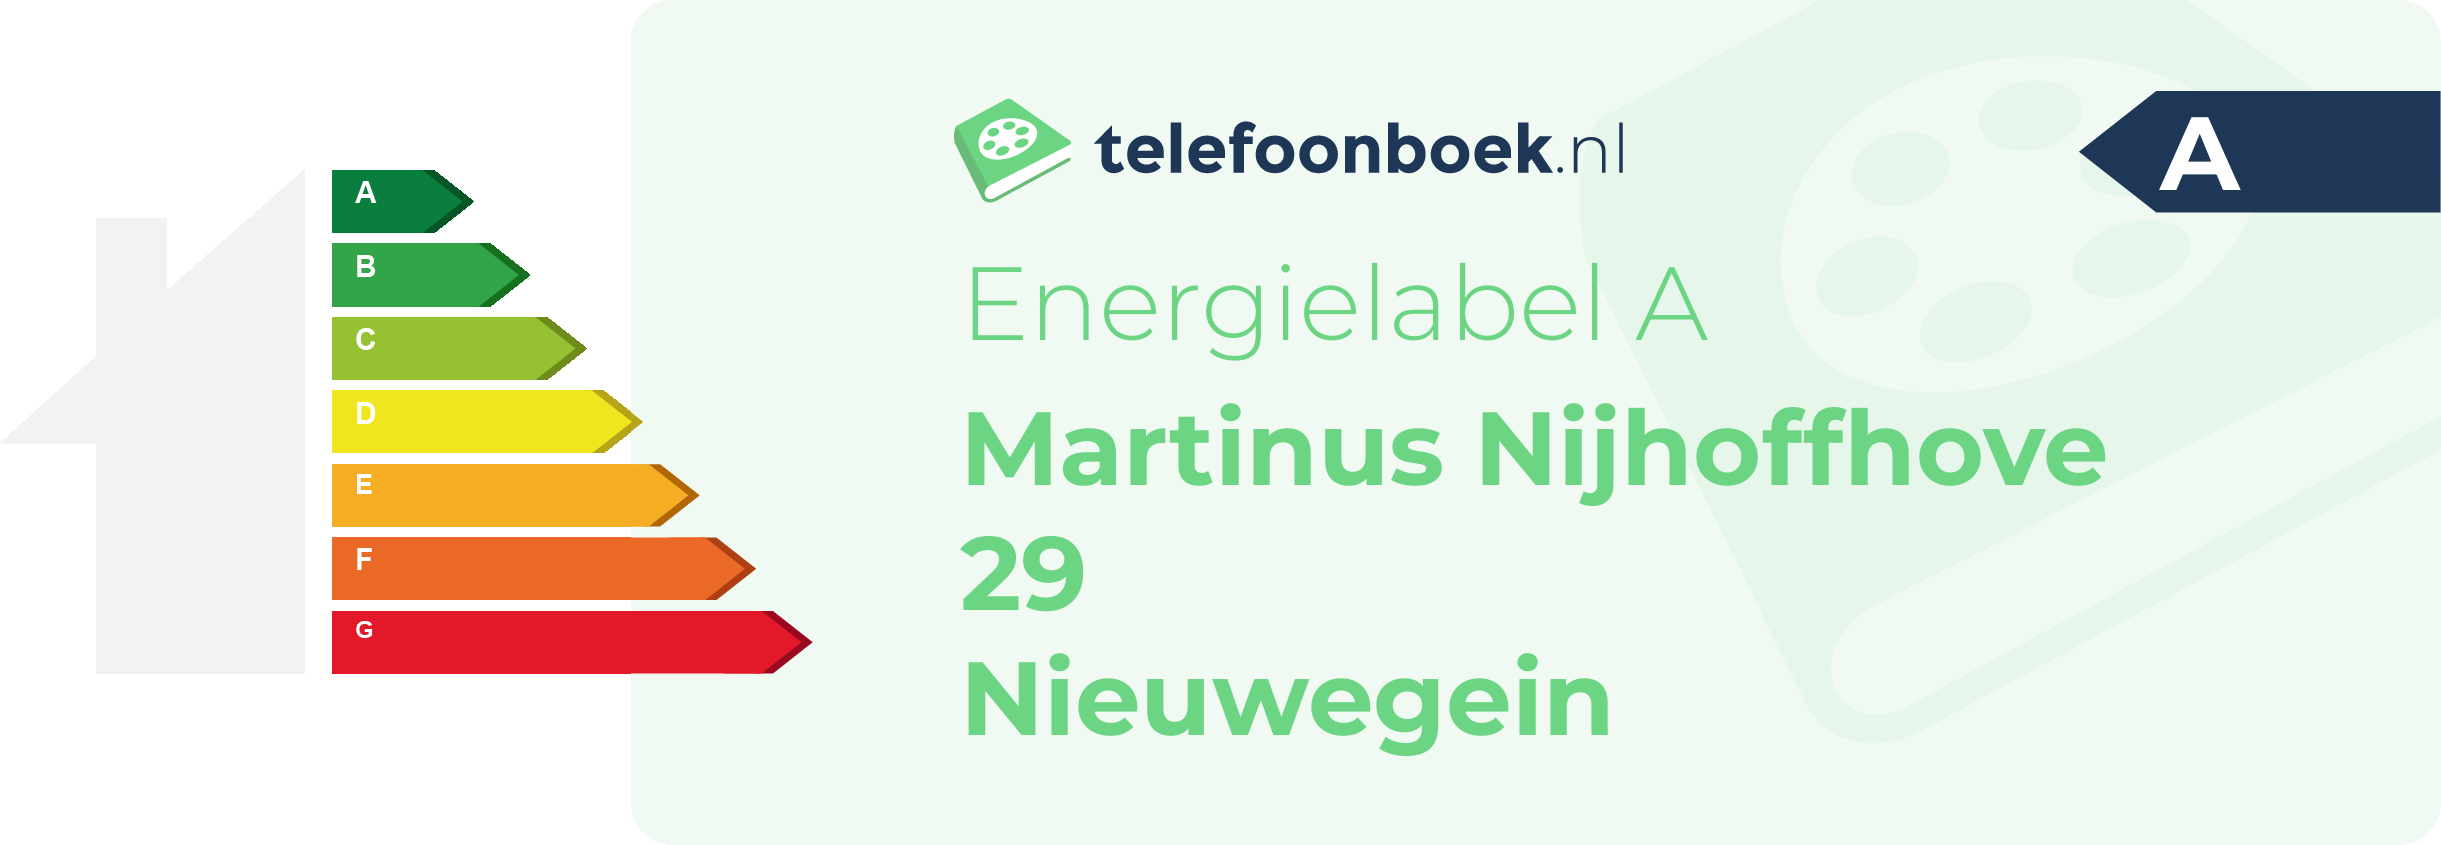 Energielabel Martinus Nijhoffhove 29 Nieuwegein